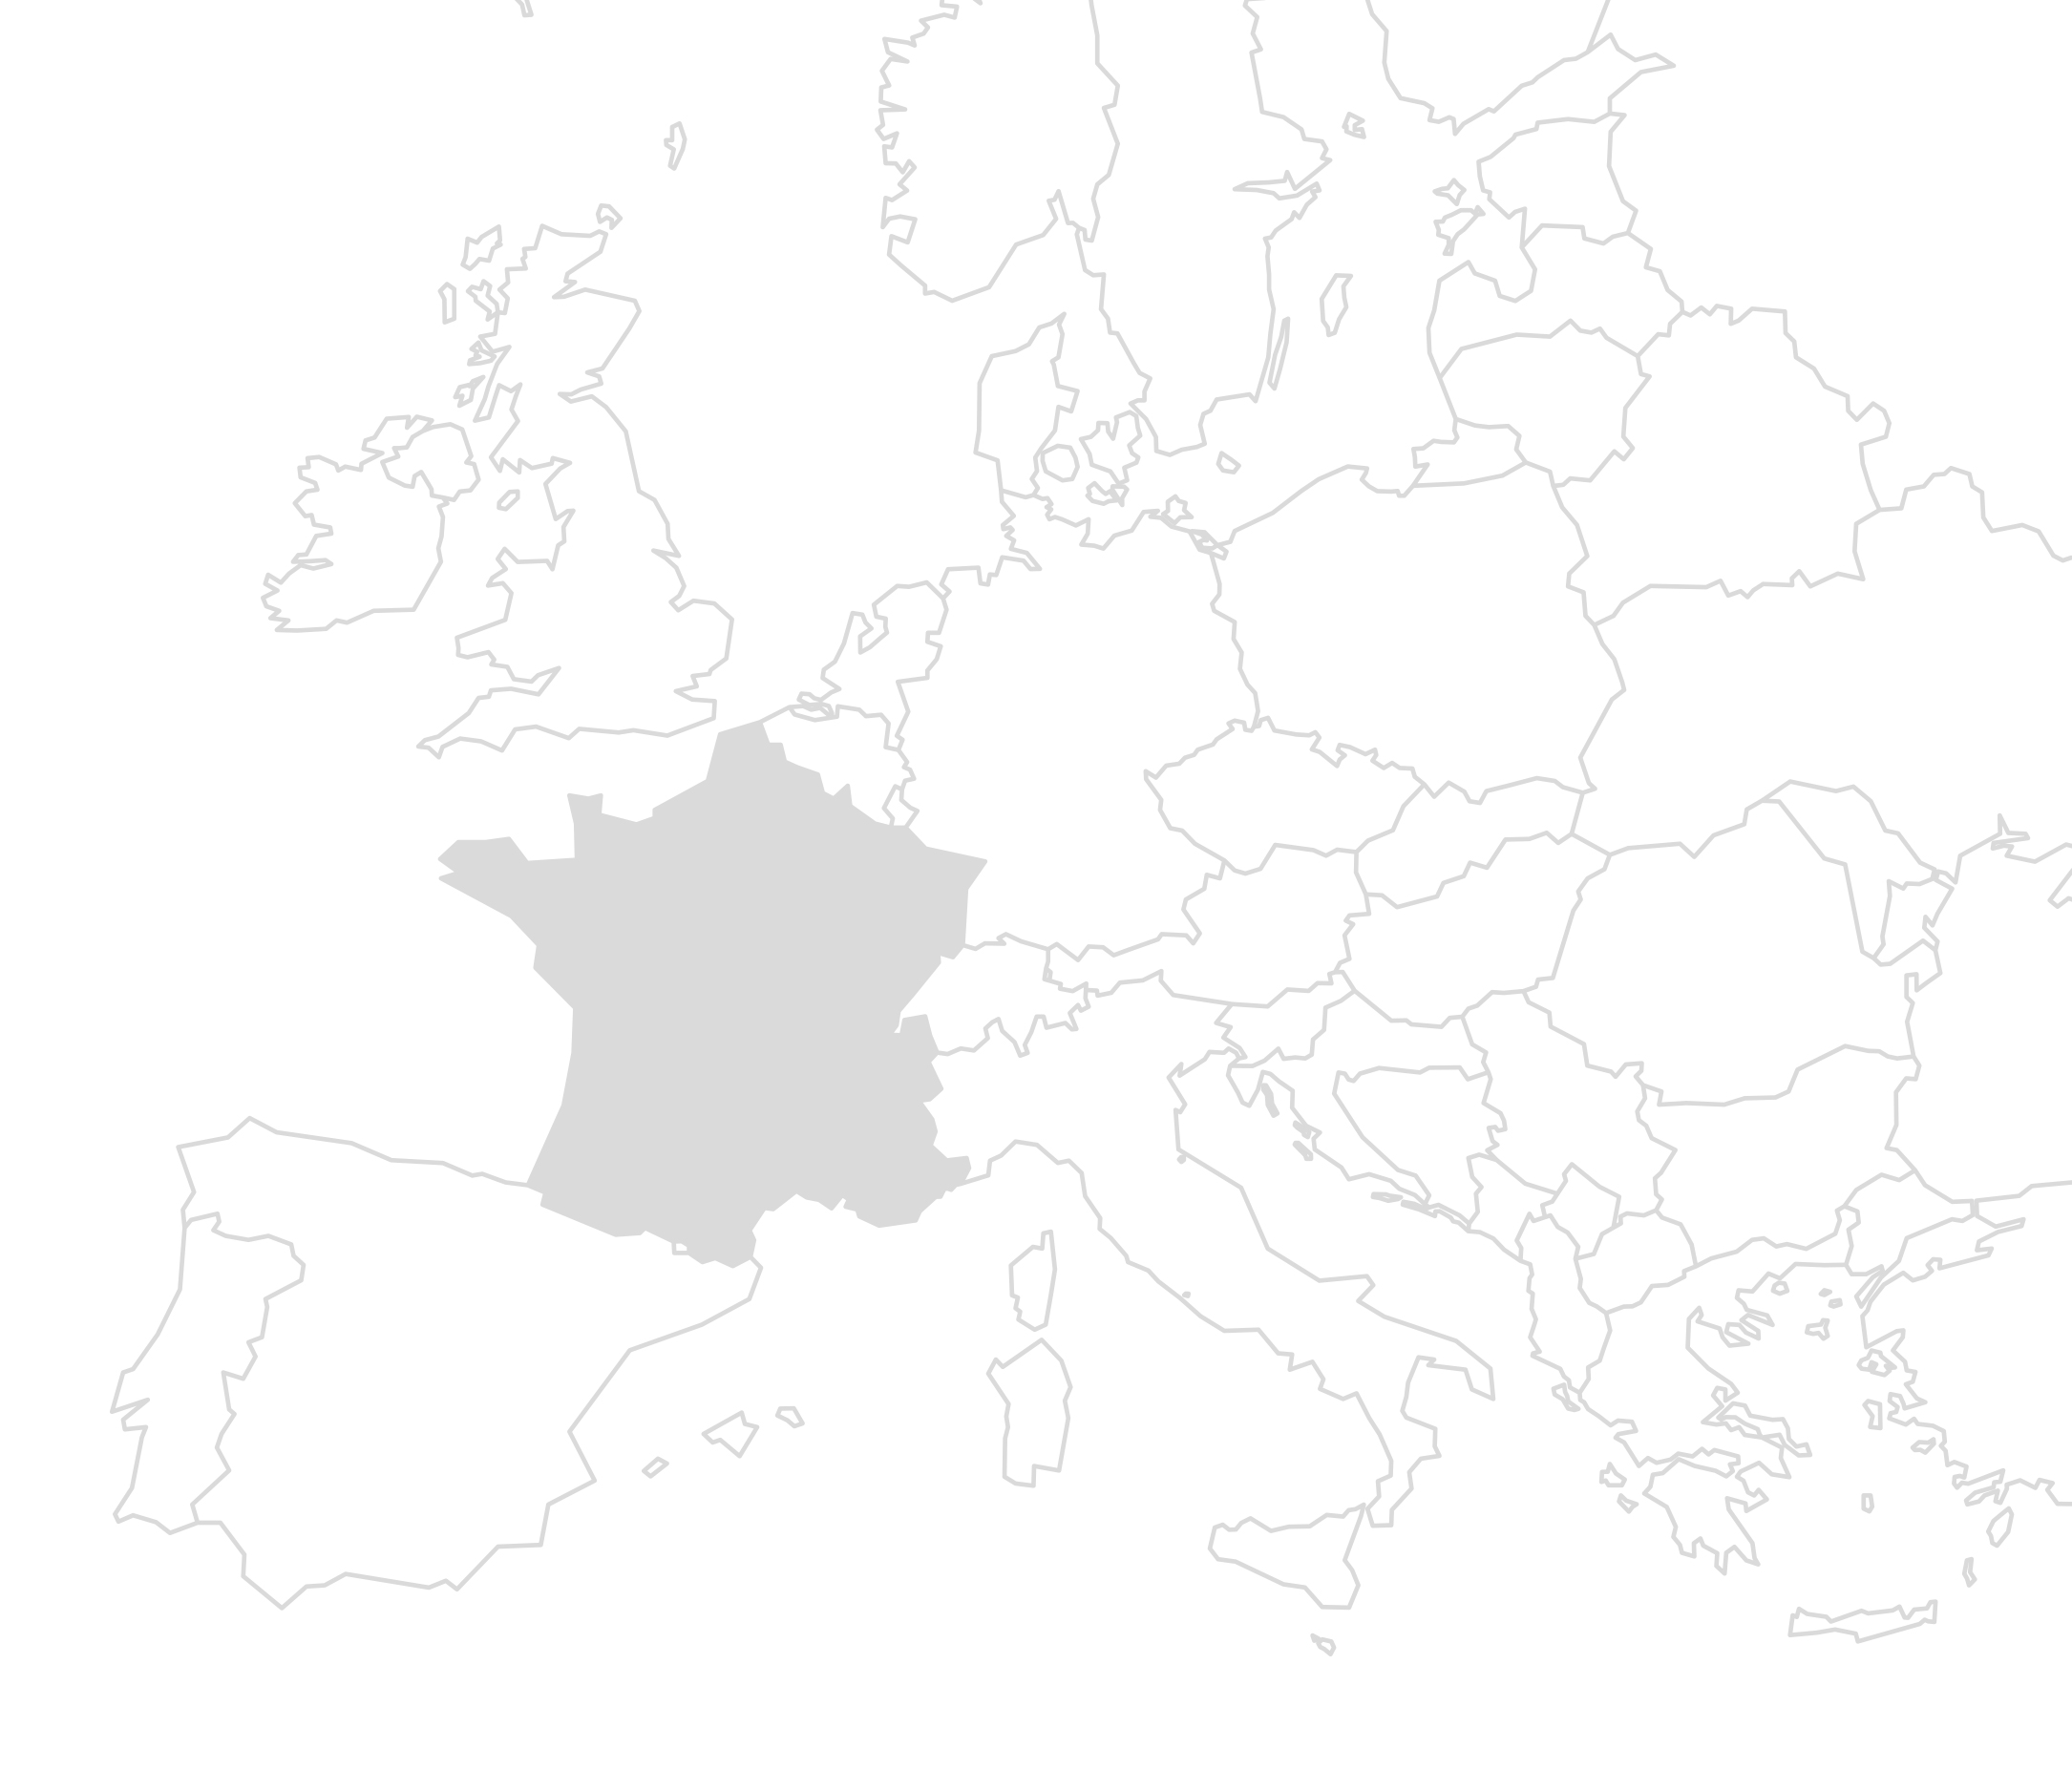 Vereinfachte Karte von Europa mit hervorgehobenem Frankreich in der Mitte, umgeben von Ländergrenzen ohne Beschriftungen.